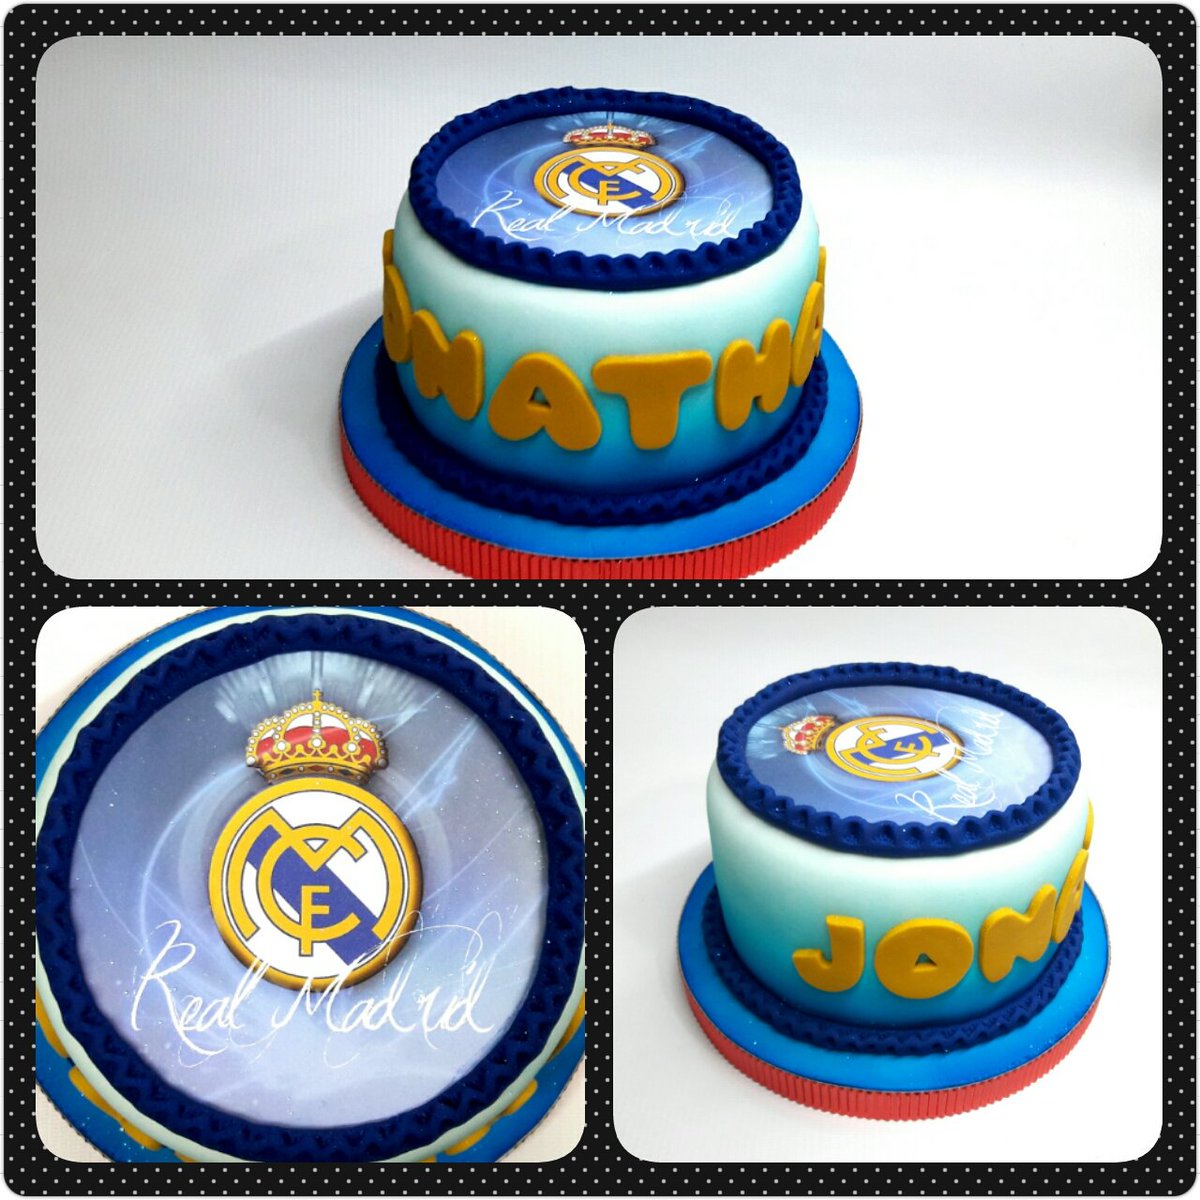 Cake Standard • Real Madrid #PrityCakes #pritycakes #cake #torta #dulce #pastel #fondantcake #realmadrid #realmadridcake #panama #pty